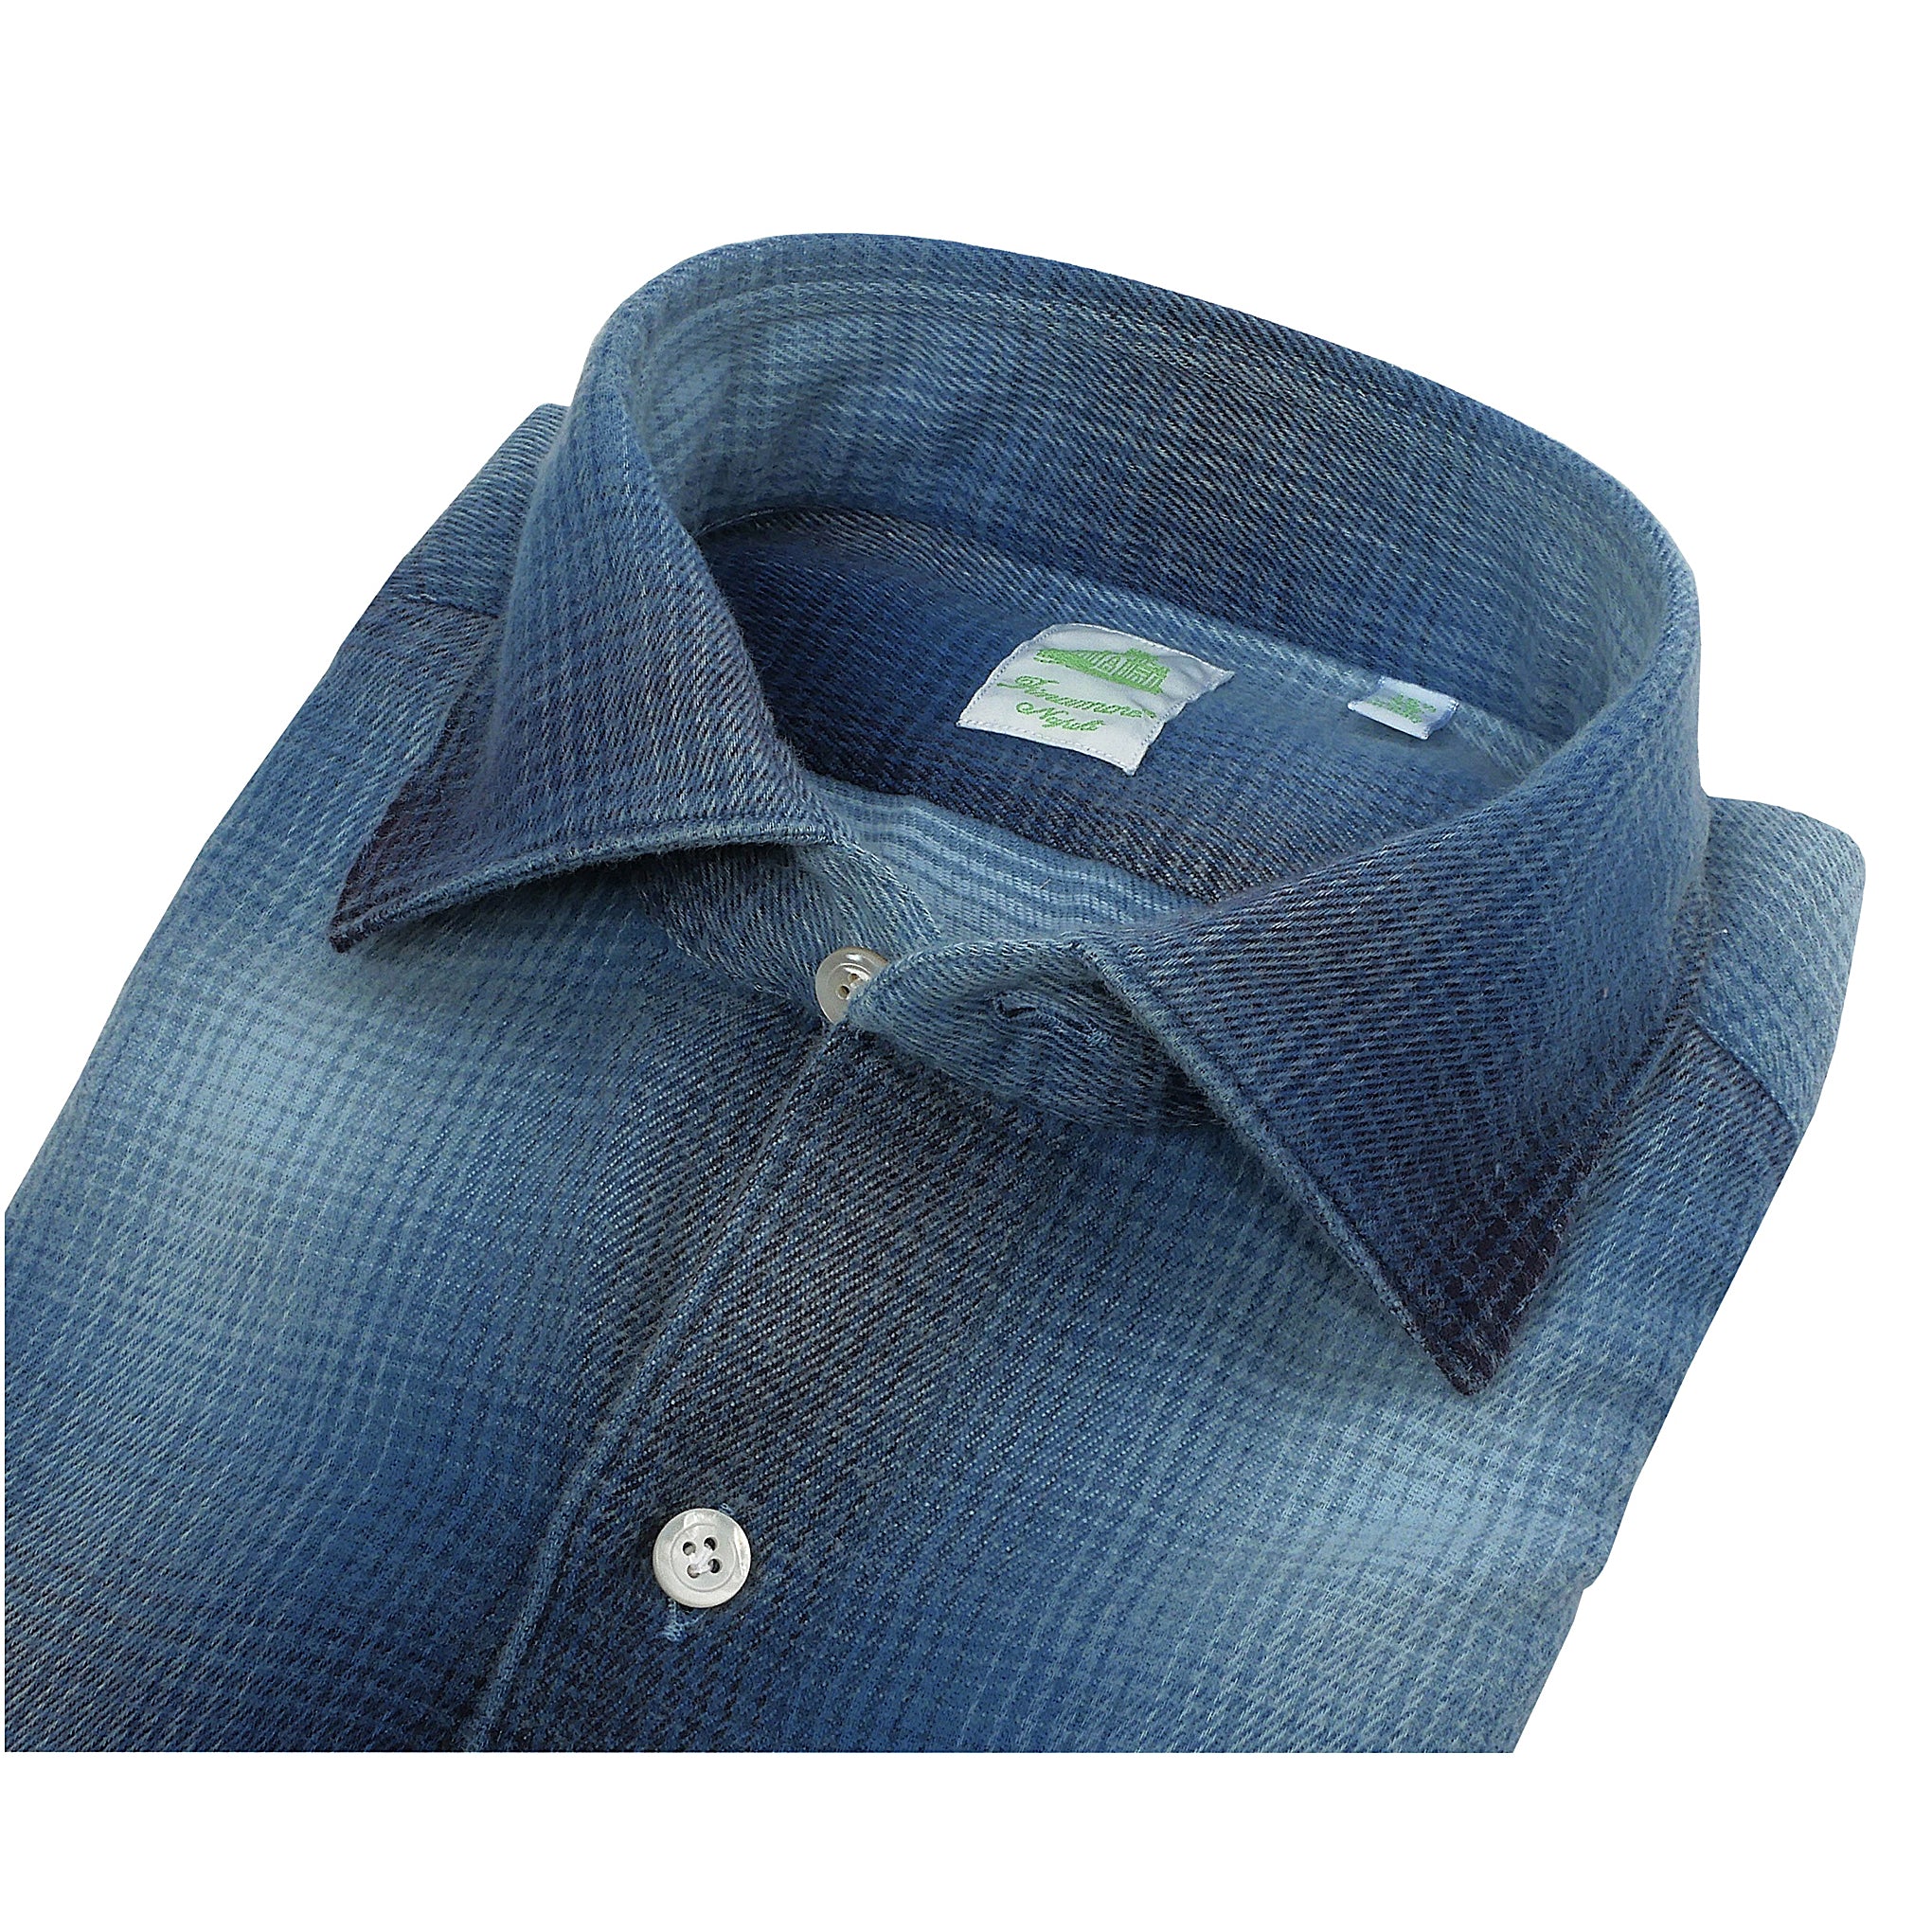 Tokyo slim fit shirt in fake indigo madras sport in cotton